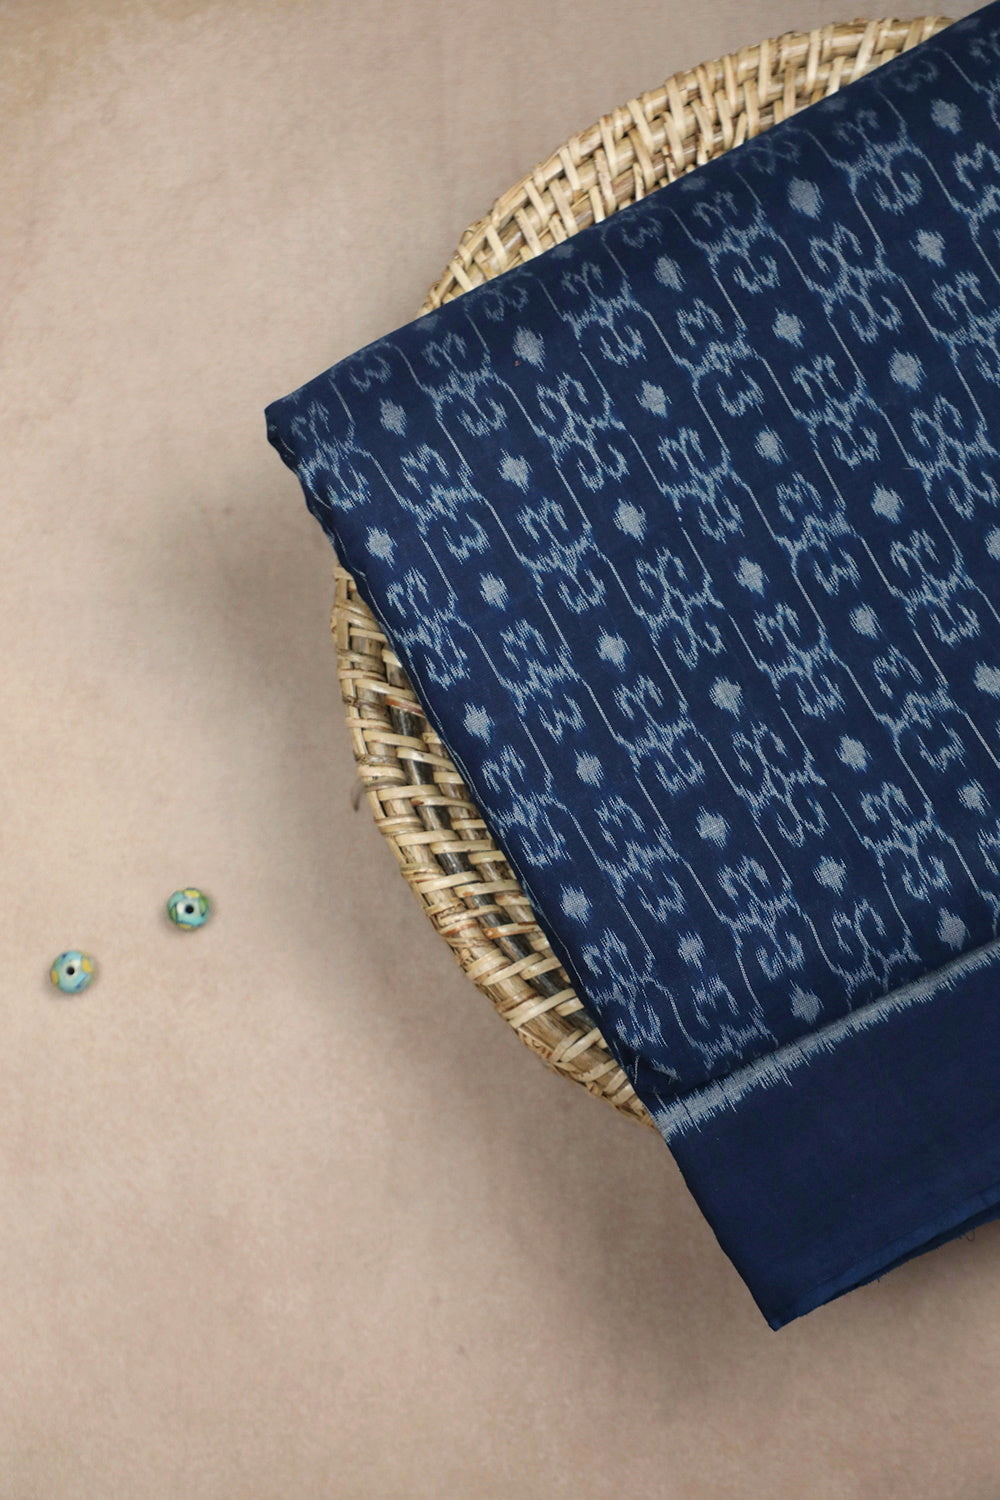 Patterned on Blue Orissa Ikat Cotton Fabric - 0.5m